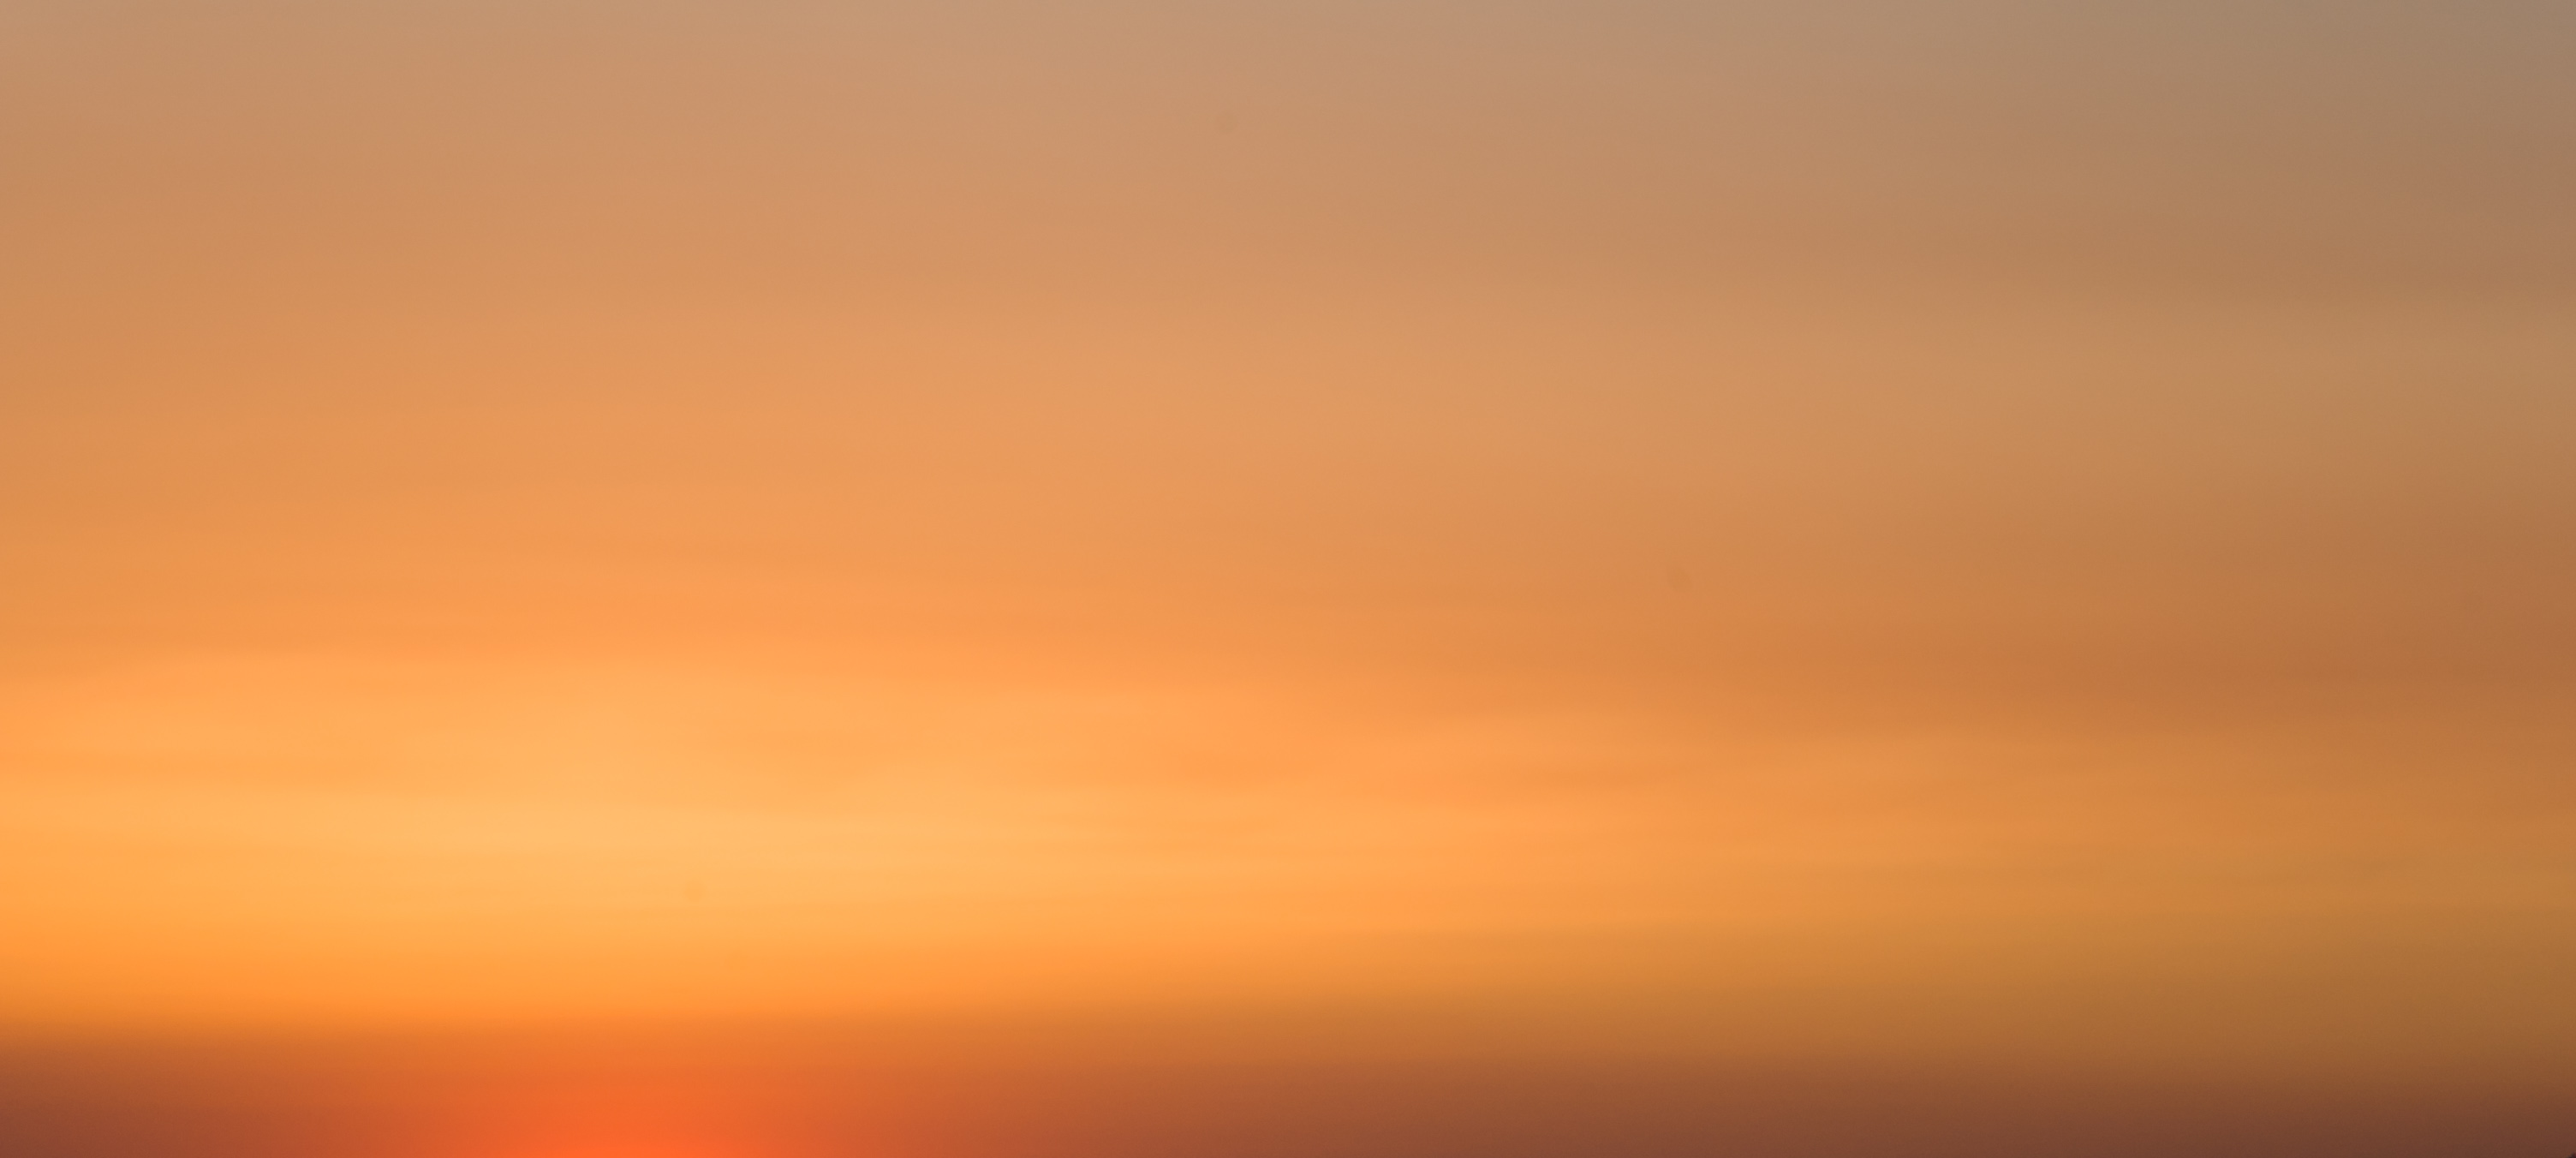 Sunset texture photo